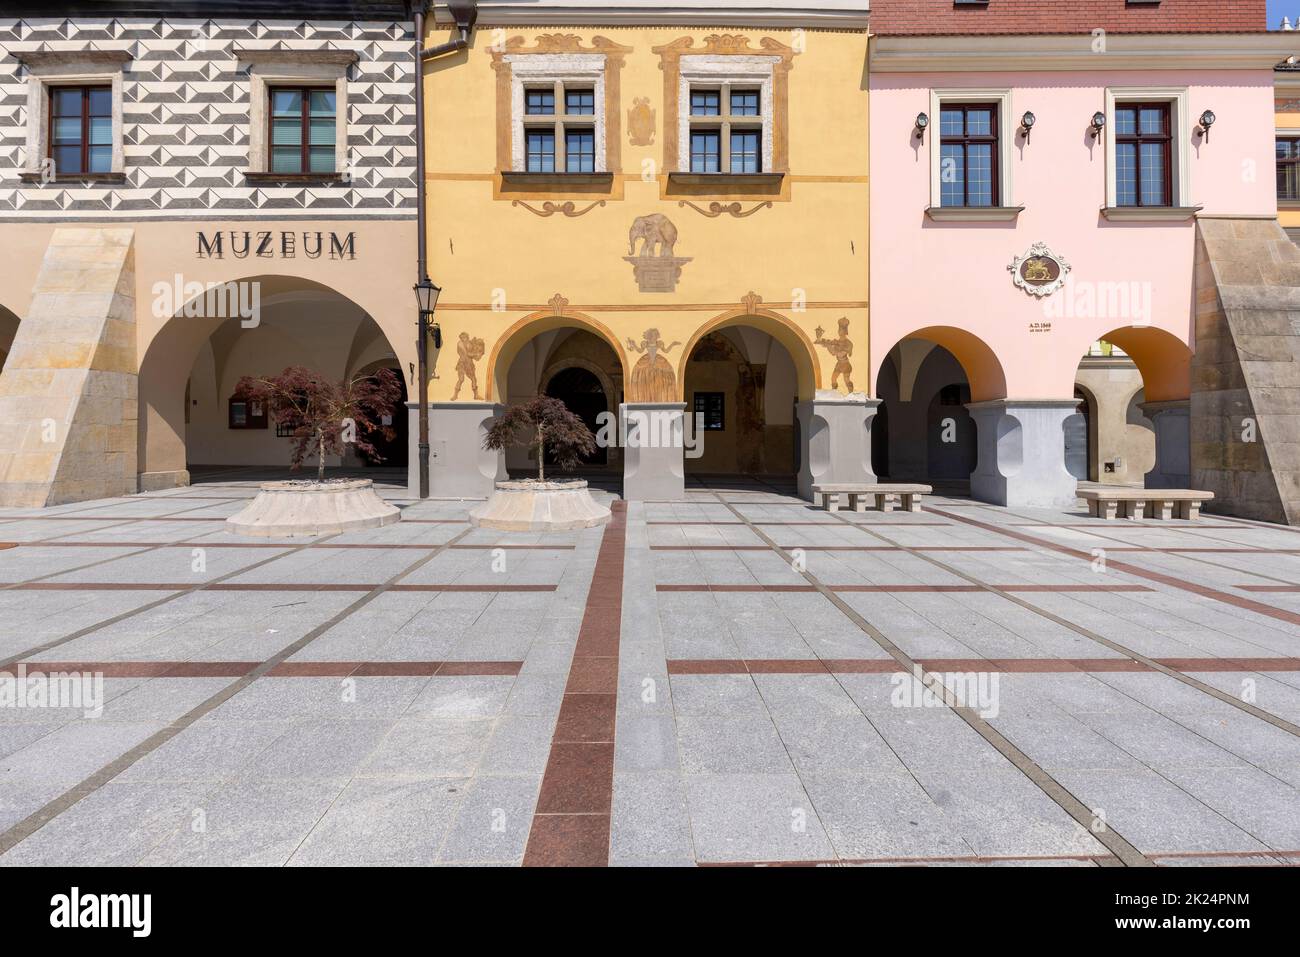 Tarnow, Pologne - 24 juillet 2021 : place de la ville avec maisons de tenement colorées de la Renaissance.Le marché a été fondé au XIVe siècle au cours de l'emplacement Banque D'Images